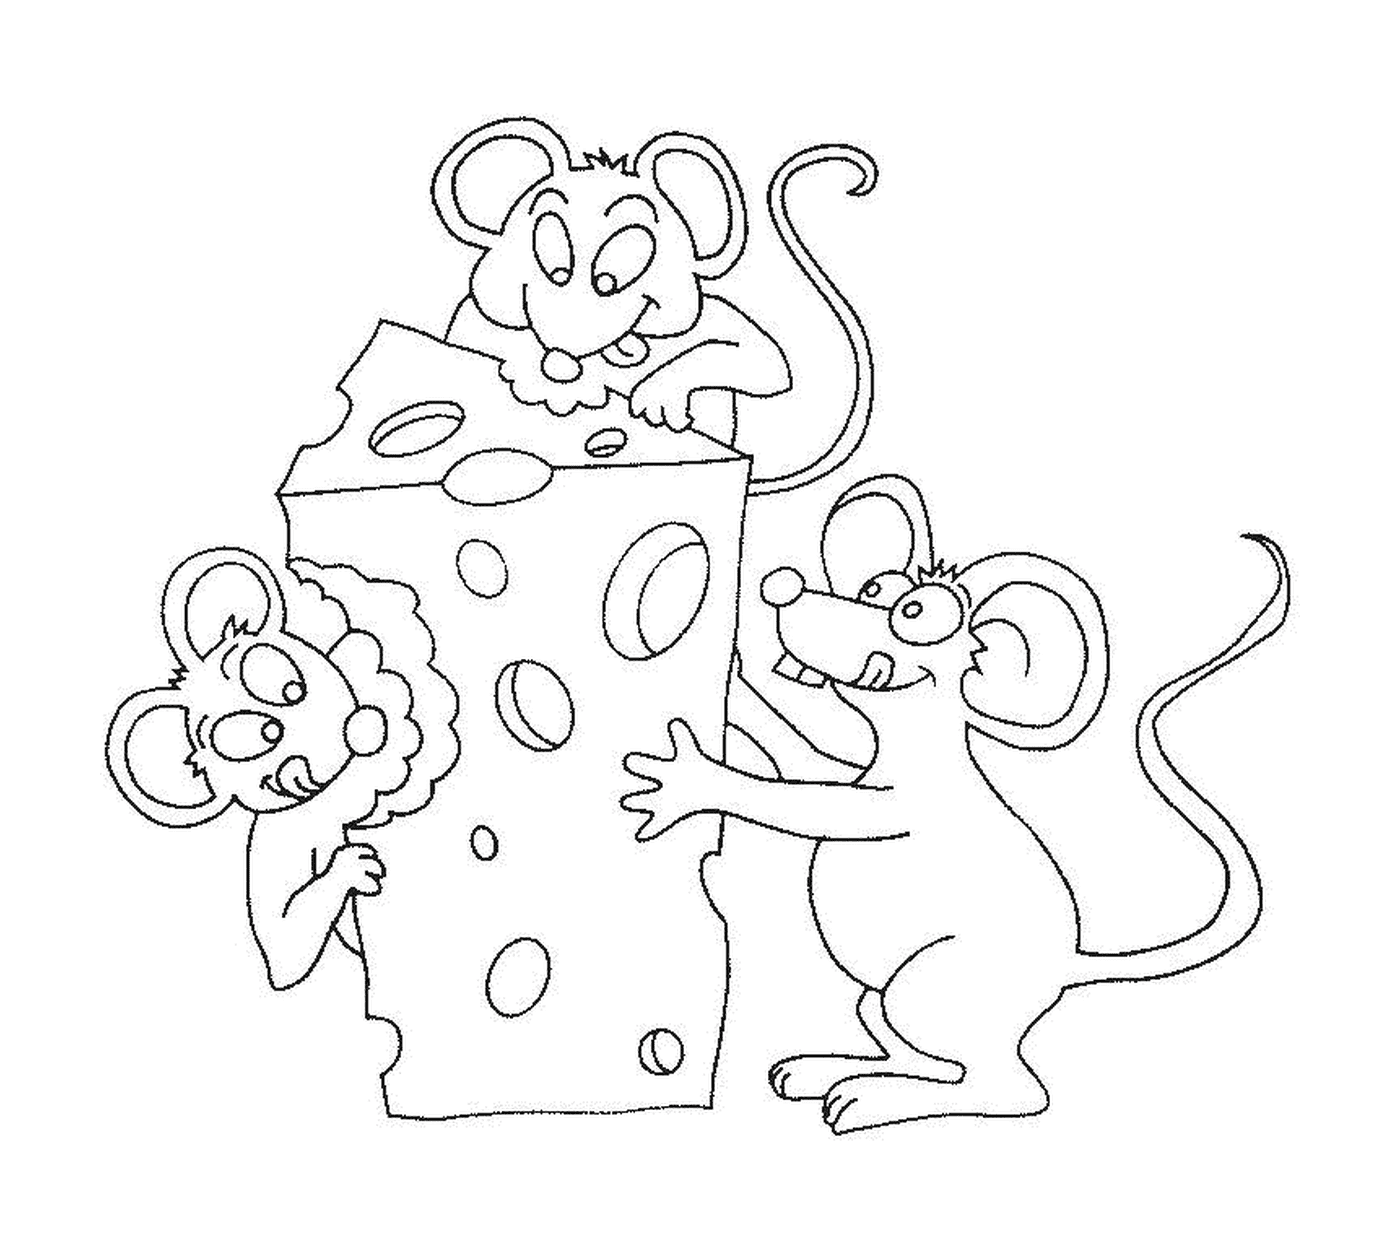  Tre topi per un pezzo di formaggio 